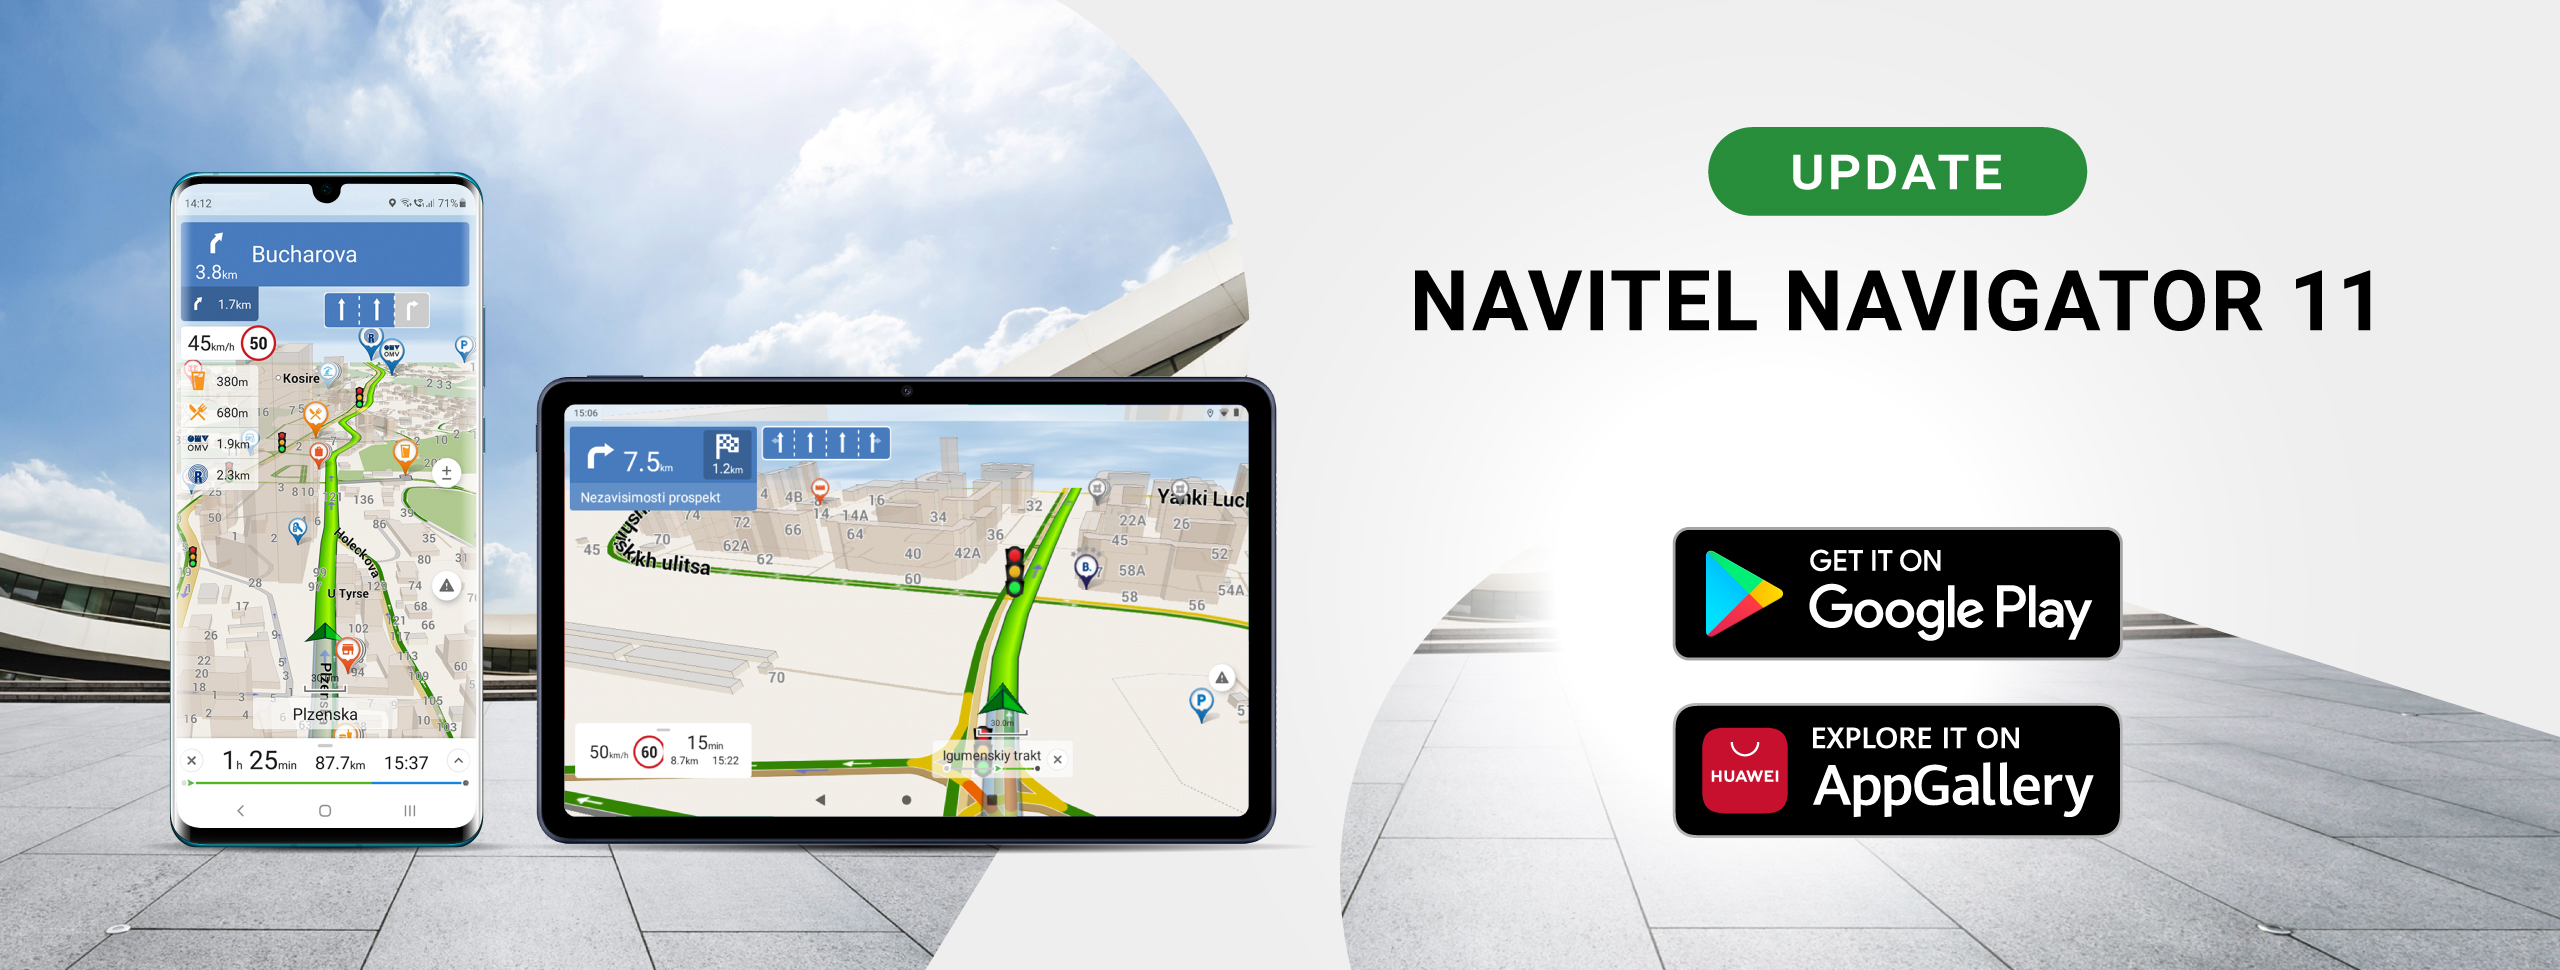 NAVITEL® has released an update for Navitel Navigator 11